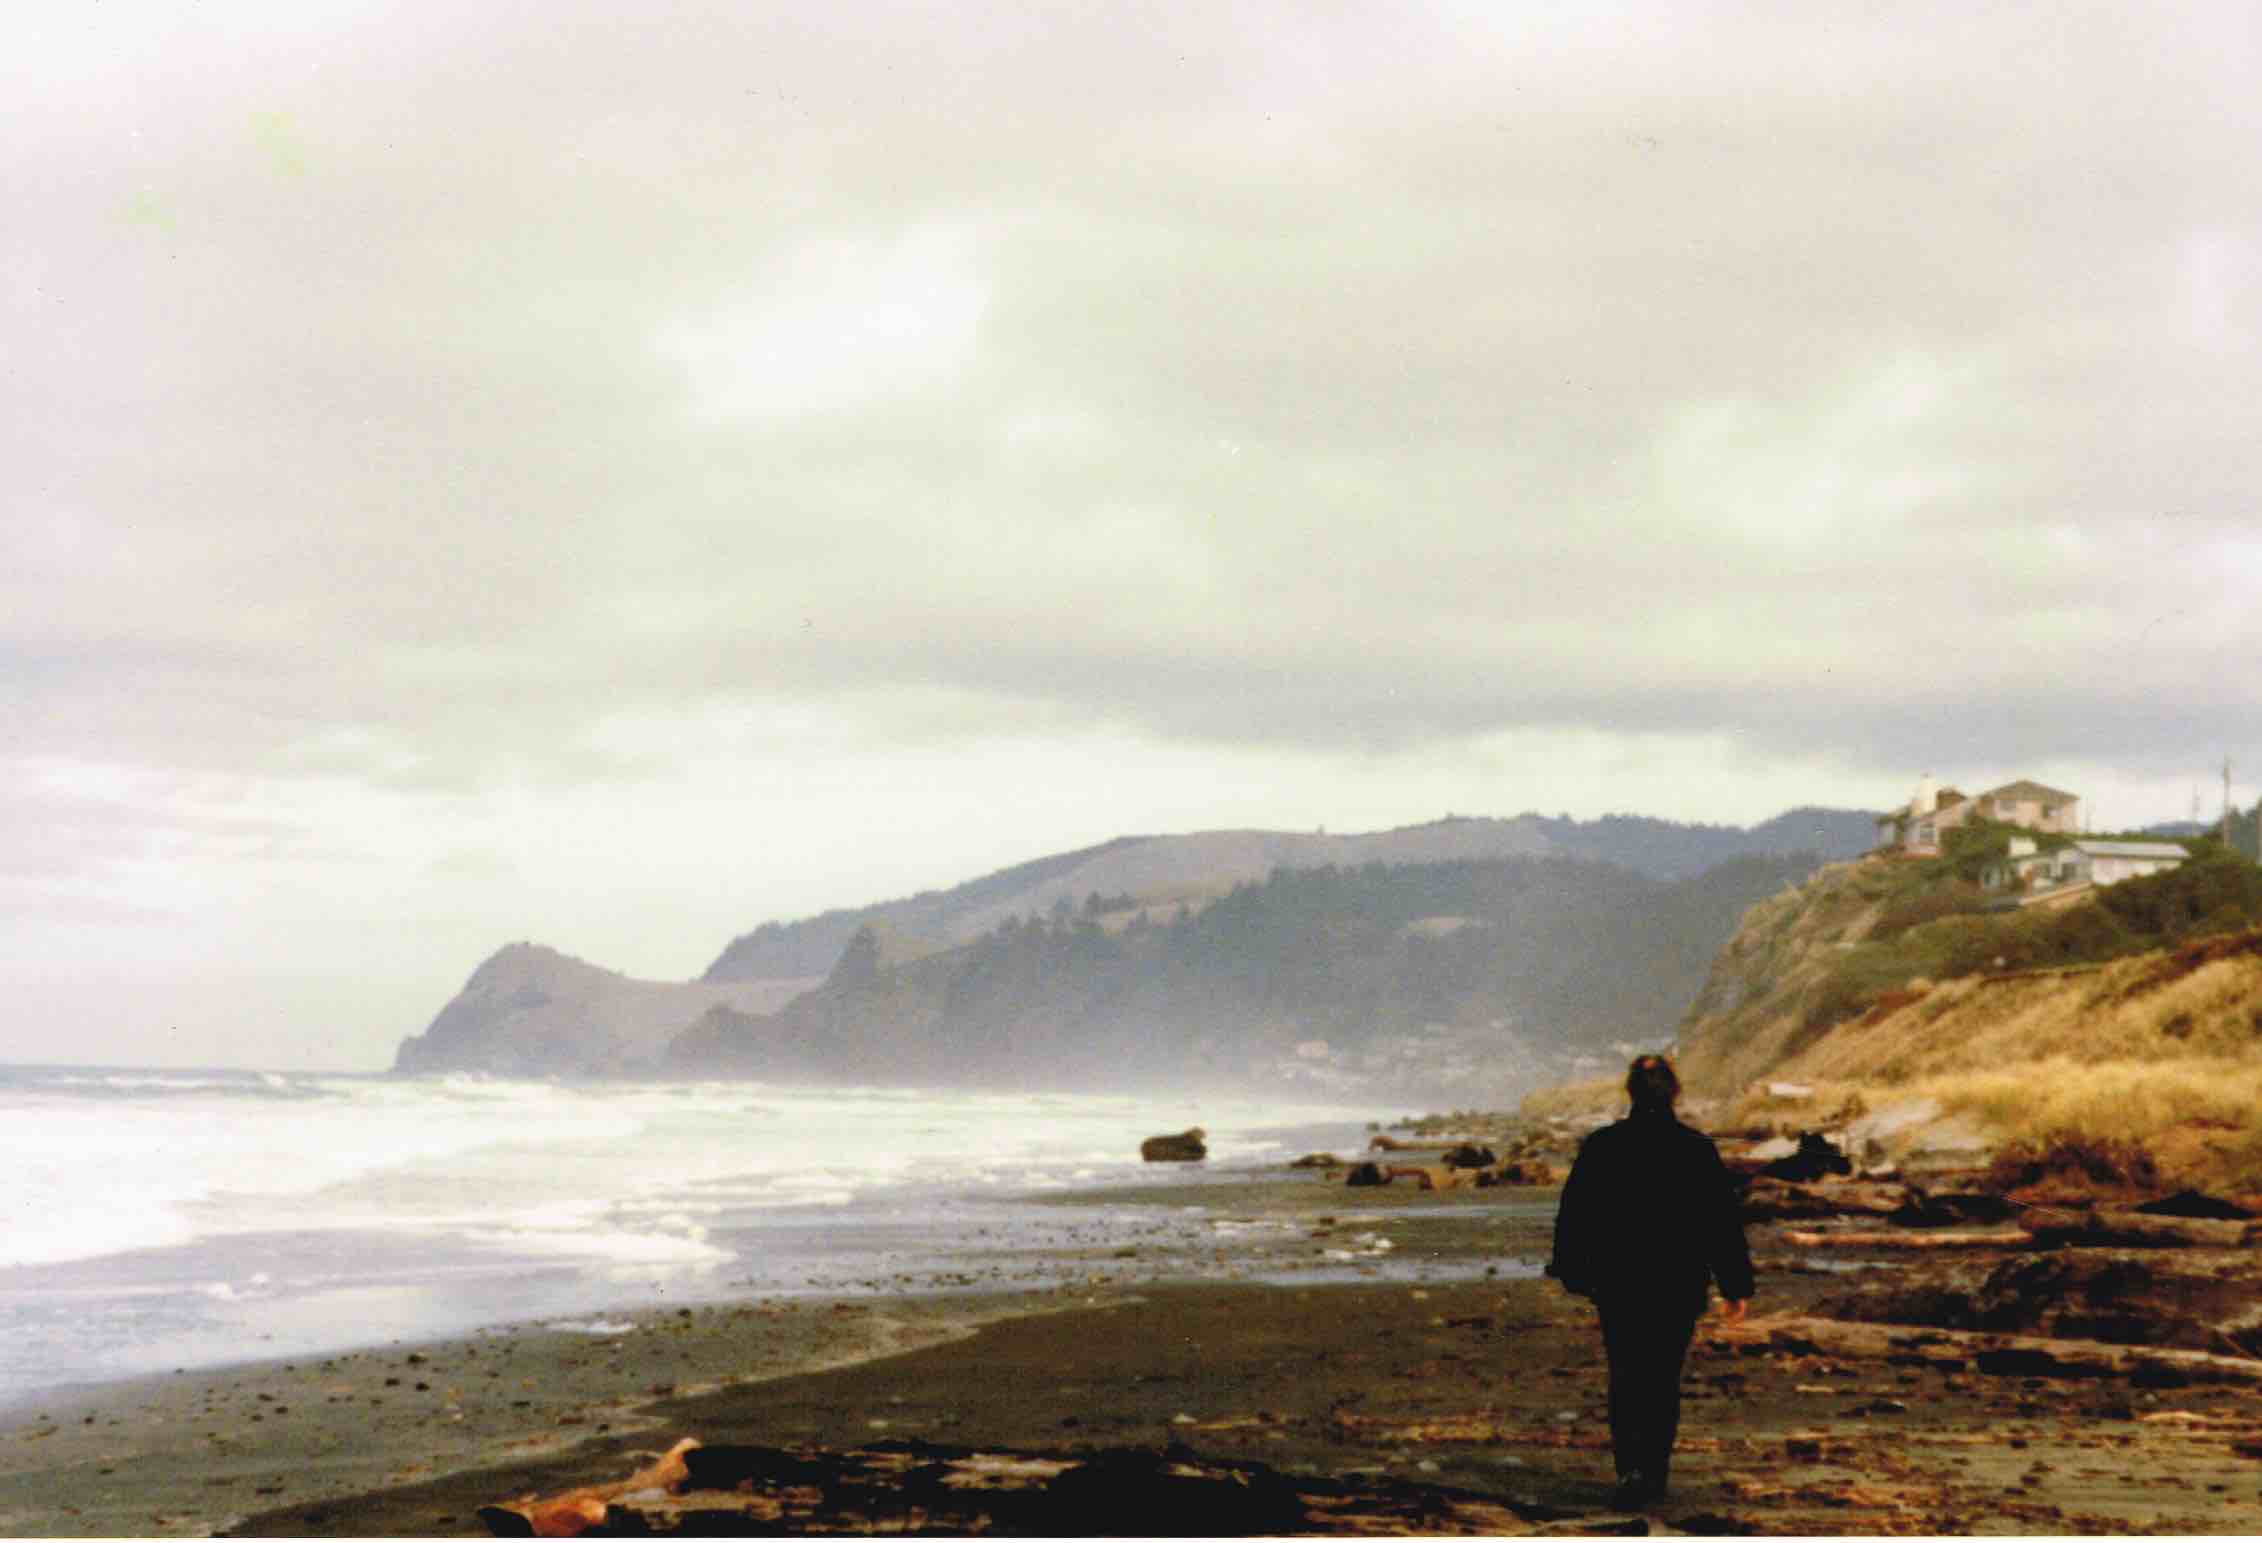 Anth Oregon beach 1997 walking away